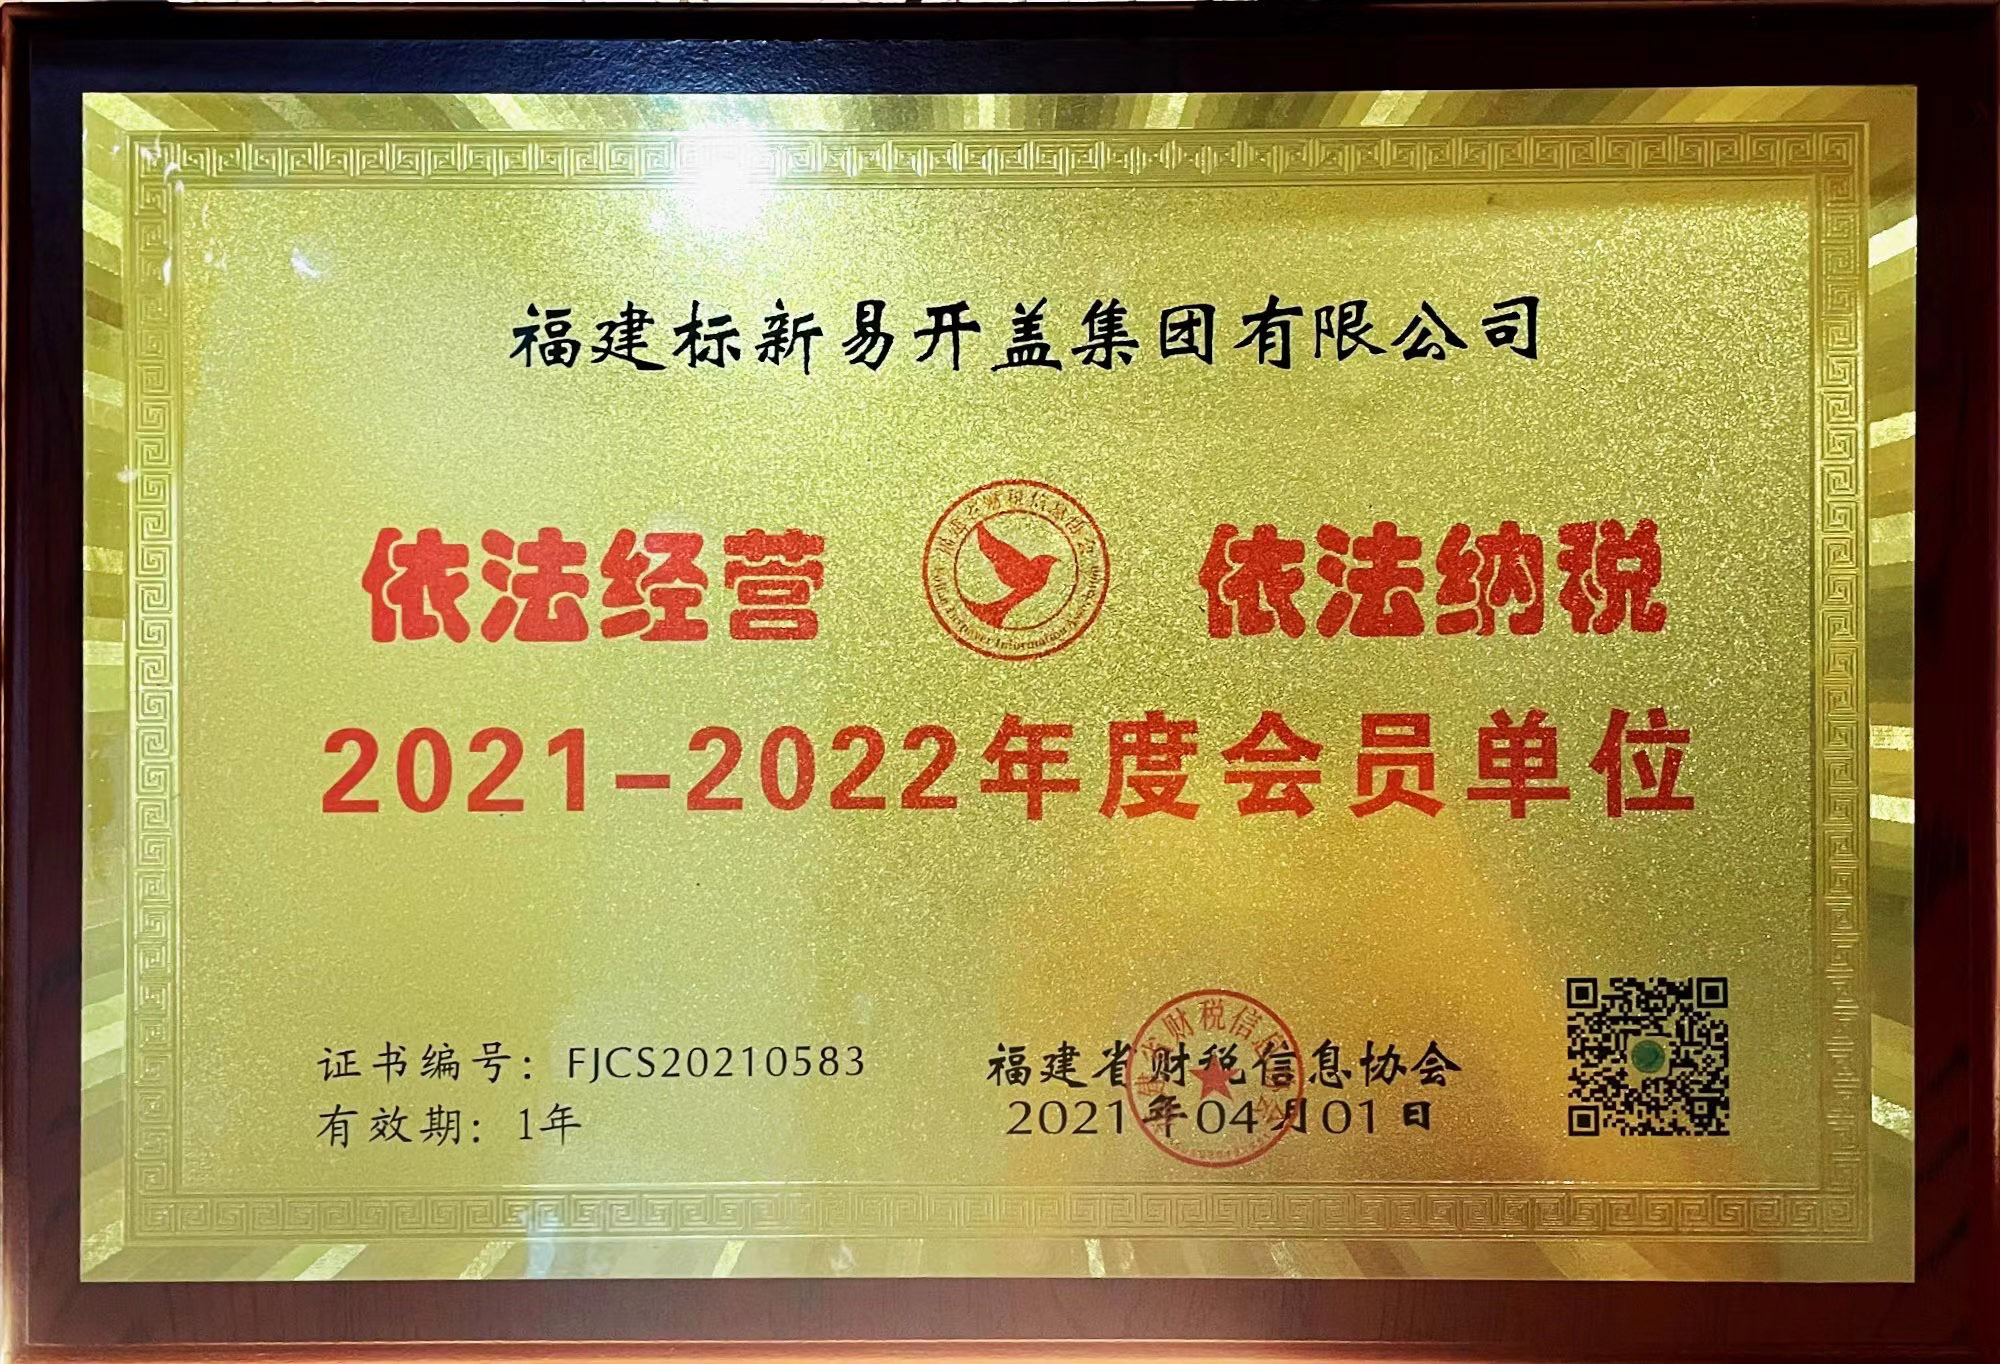 2021-2022年度会员单位